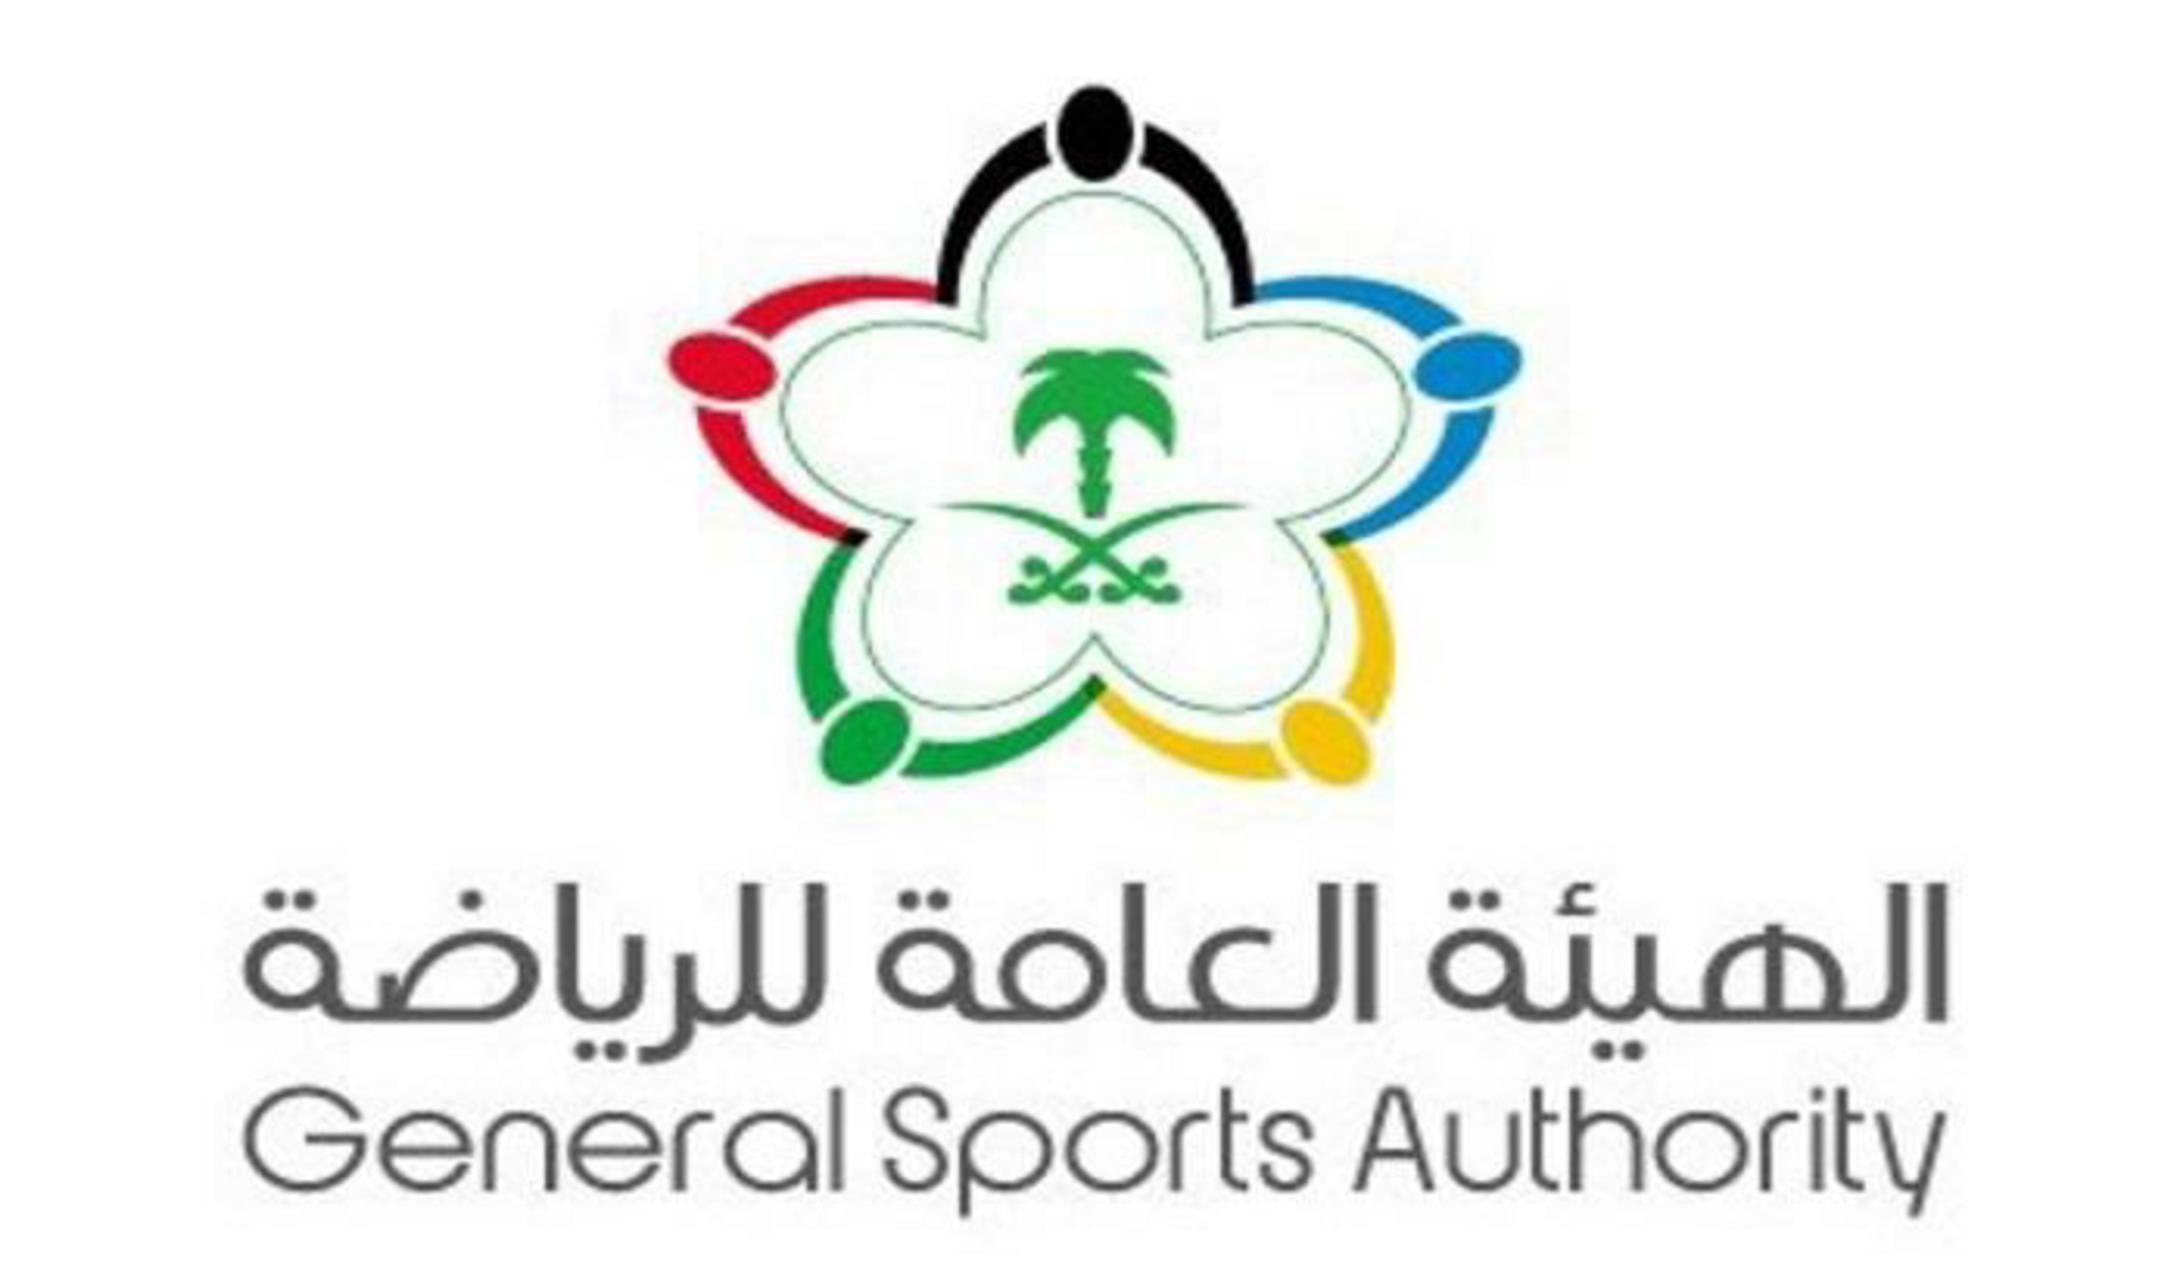 هيئة الرياضة تُعلن إعادة جائزة فيصل بن فهد للبحوث الرياضية